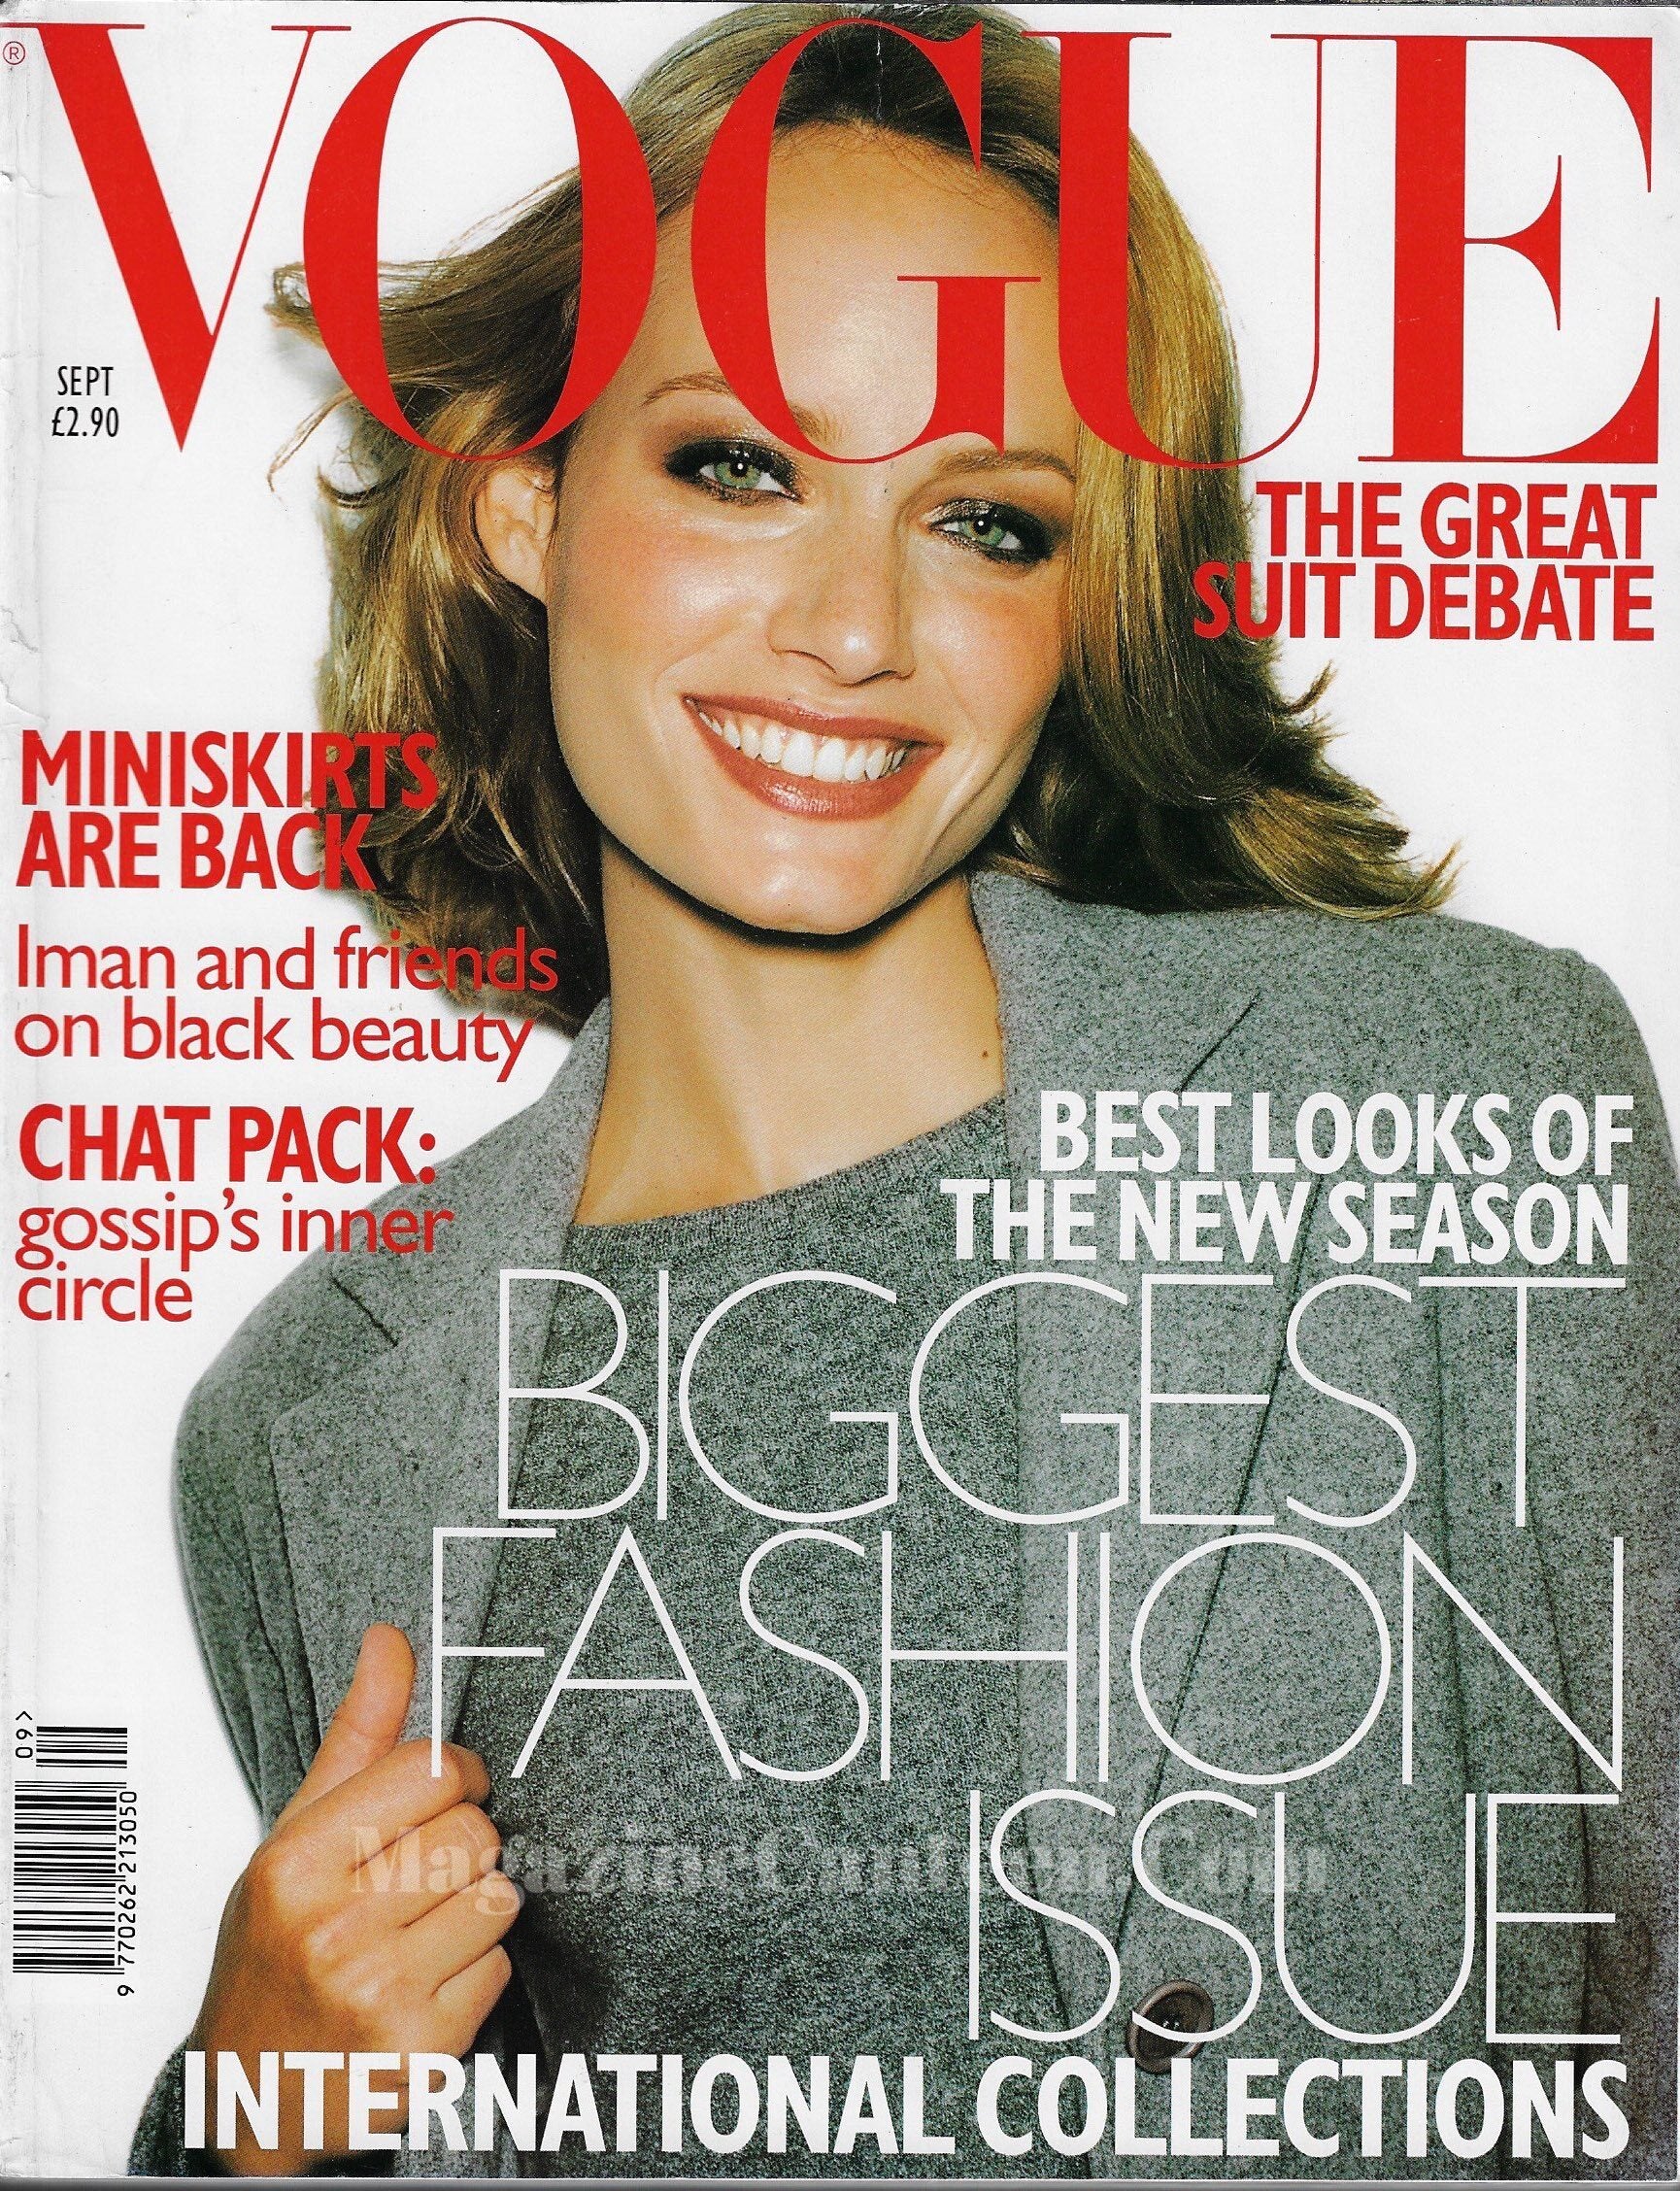 Vogue Magazine September 1997 - Amber Valletta